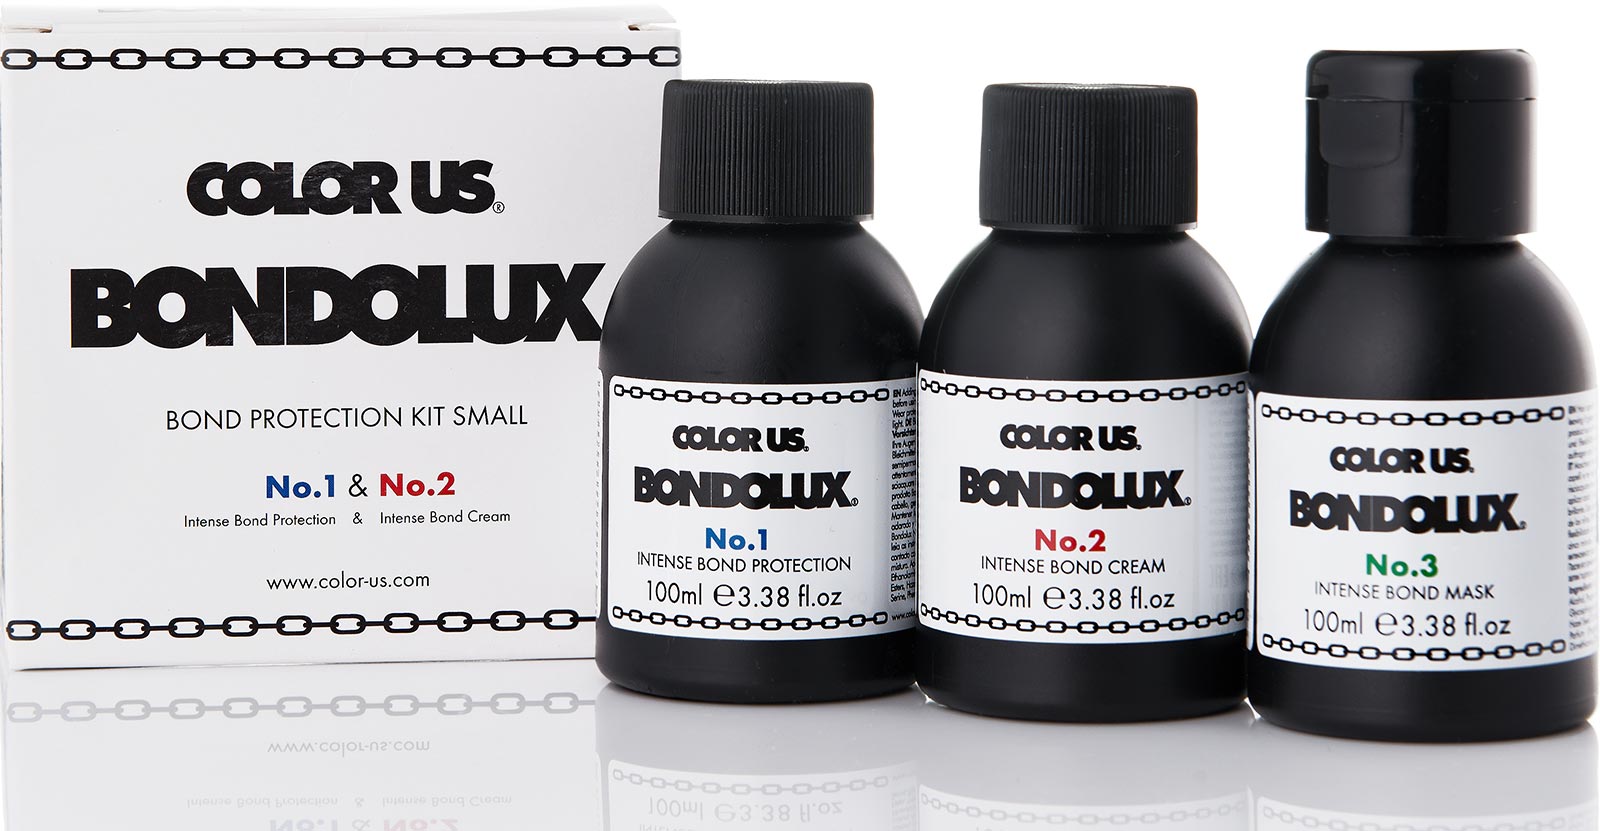 bondolux-system-2.jpg